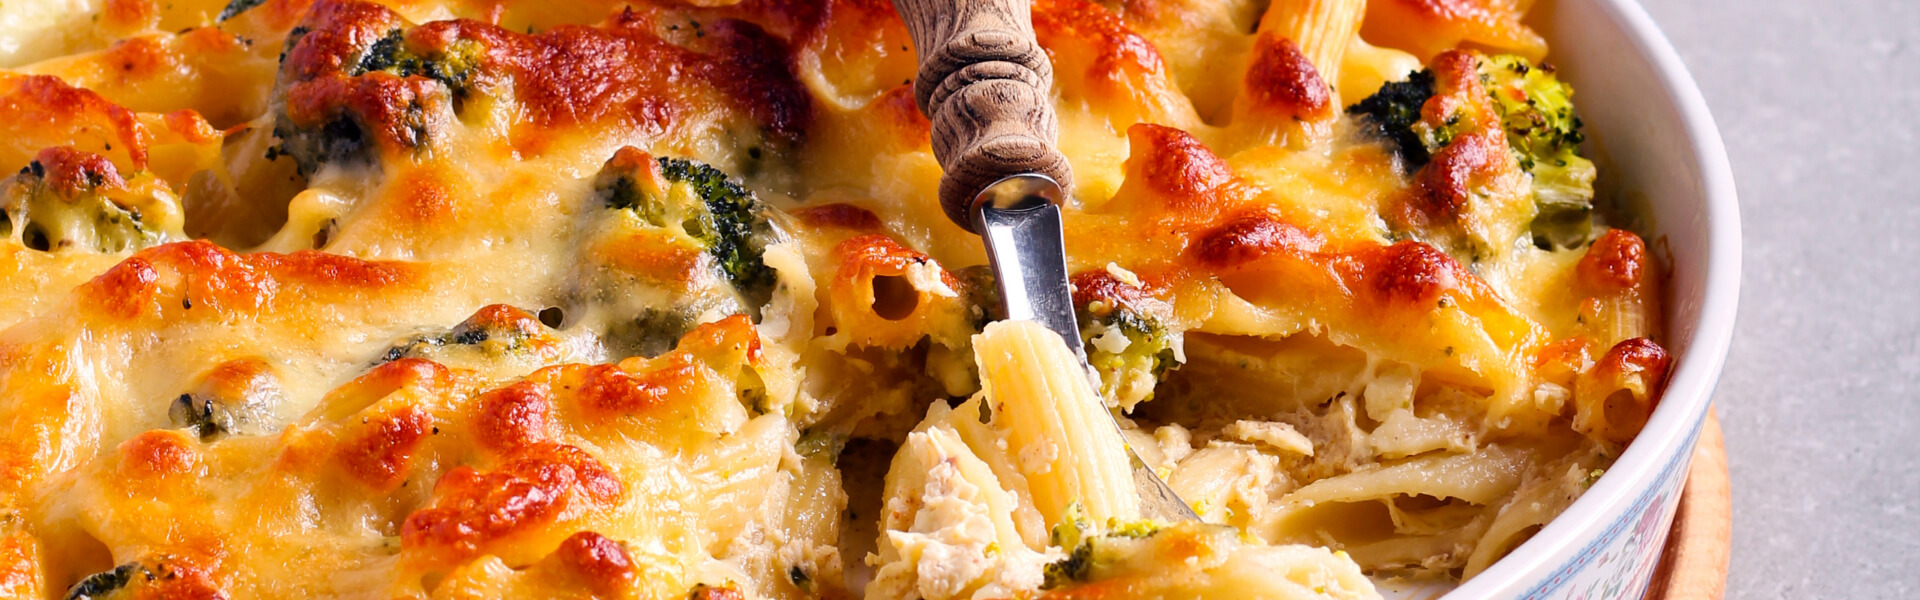 Chicken Broccoli Pasta Bake Recipe - The Tummy Clinic